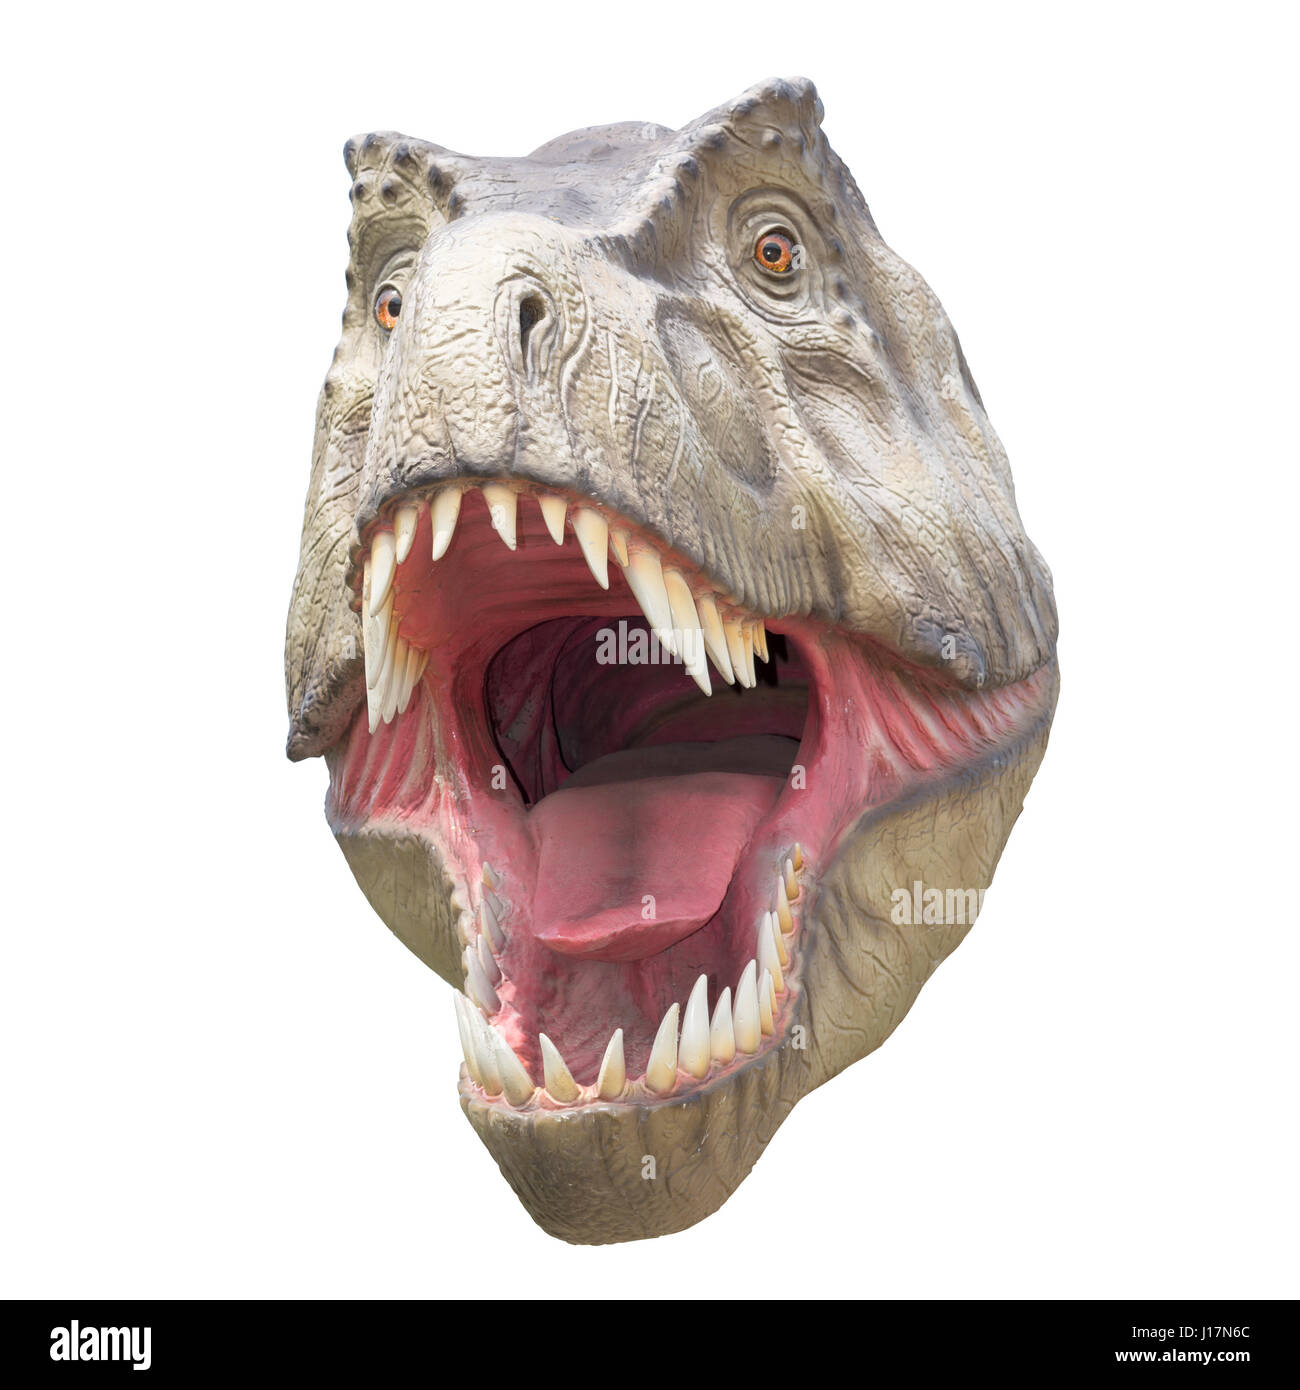 Furchterregende Fleischfresser Dinosaurier Tyrannosaurus Rex  Stockfotografie - Alamy